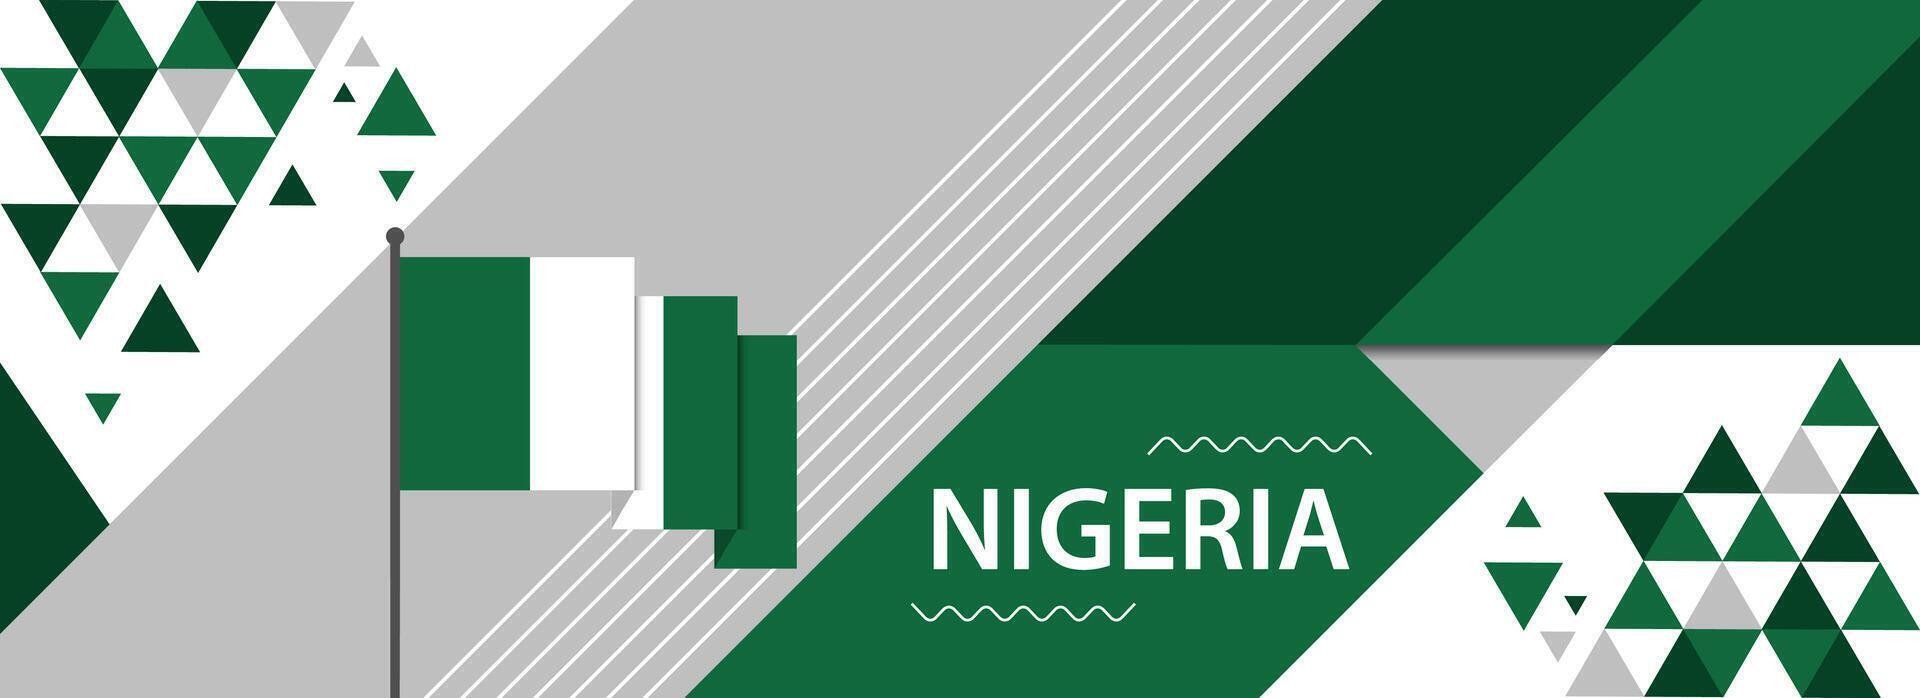 Nigeria nazionale o indipendenza giorno bandiera design per nazione celebrazione. bandiera di Nigeria con moderno retrò design e astratto geometrico icone. vettore illustrazione